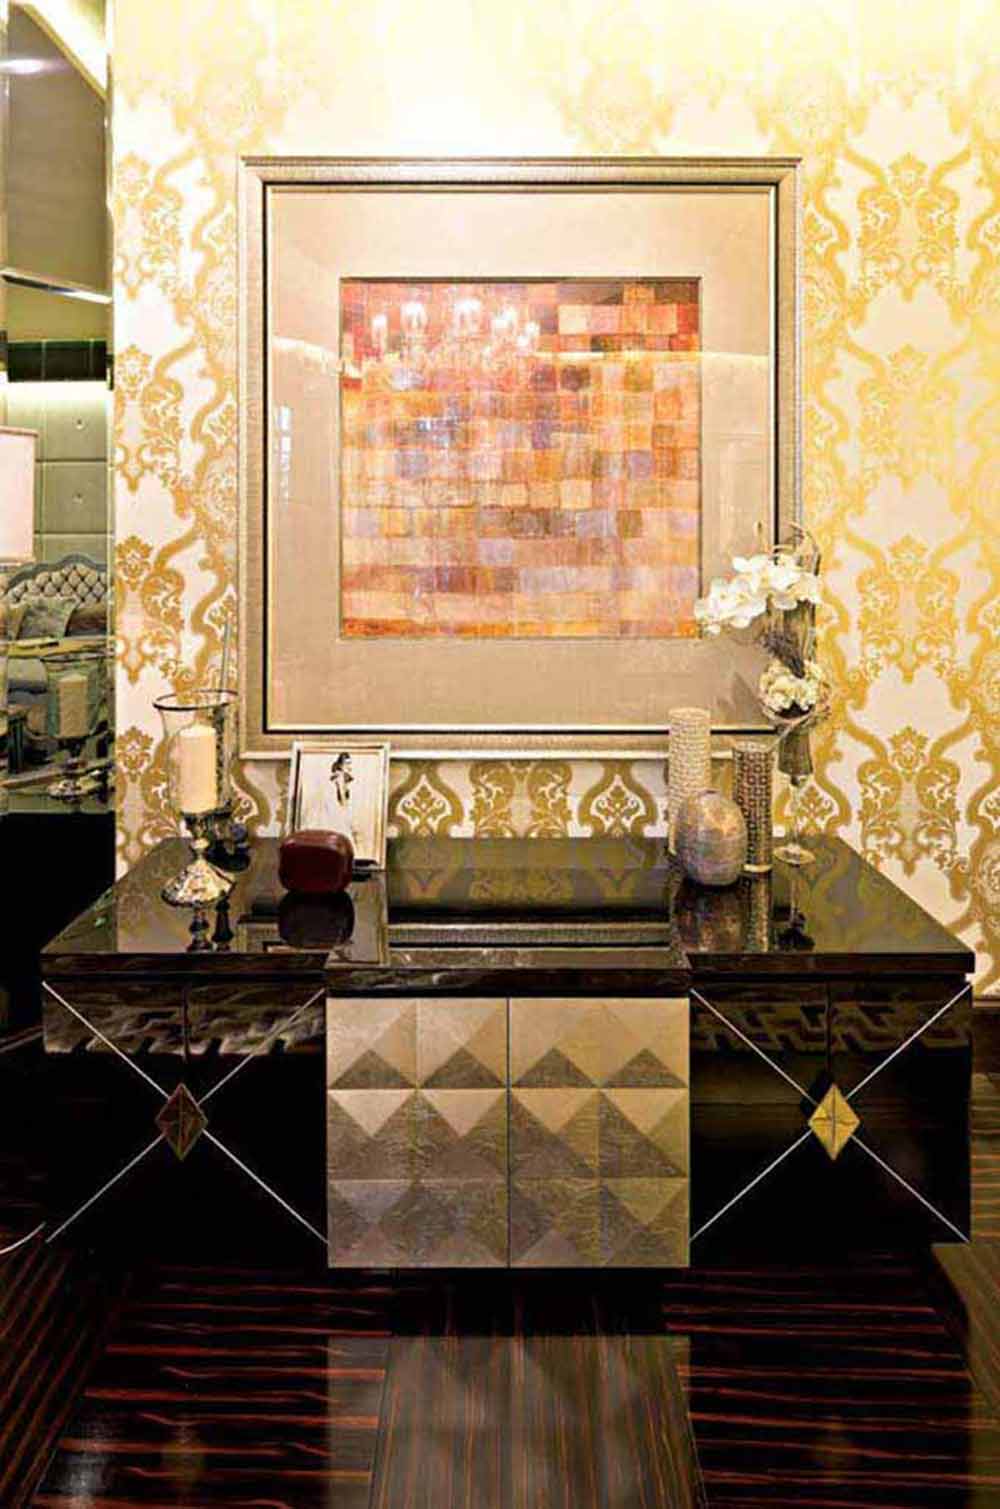 金色壁纸图样精美，墙壁上的装饰画内容散发着现代抽象的艺术风格，下方以造型设计精致而实用的收纳柜做搭配，高雅的生活品味由此凸显。